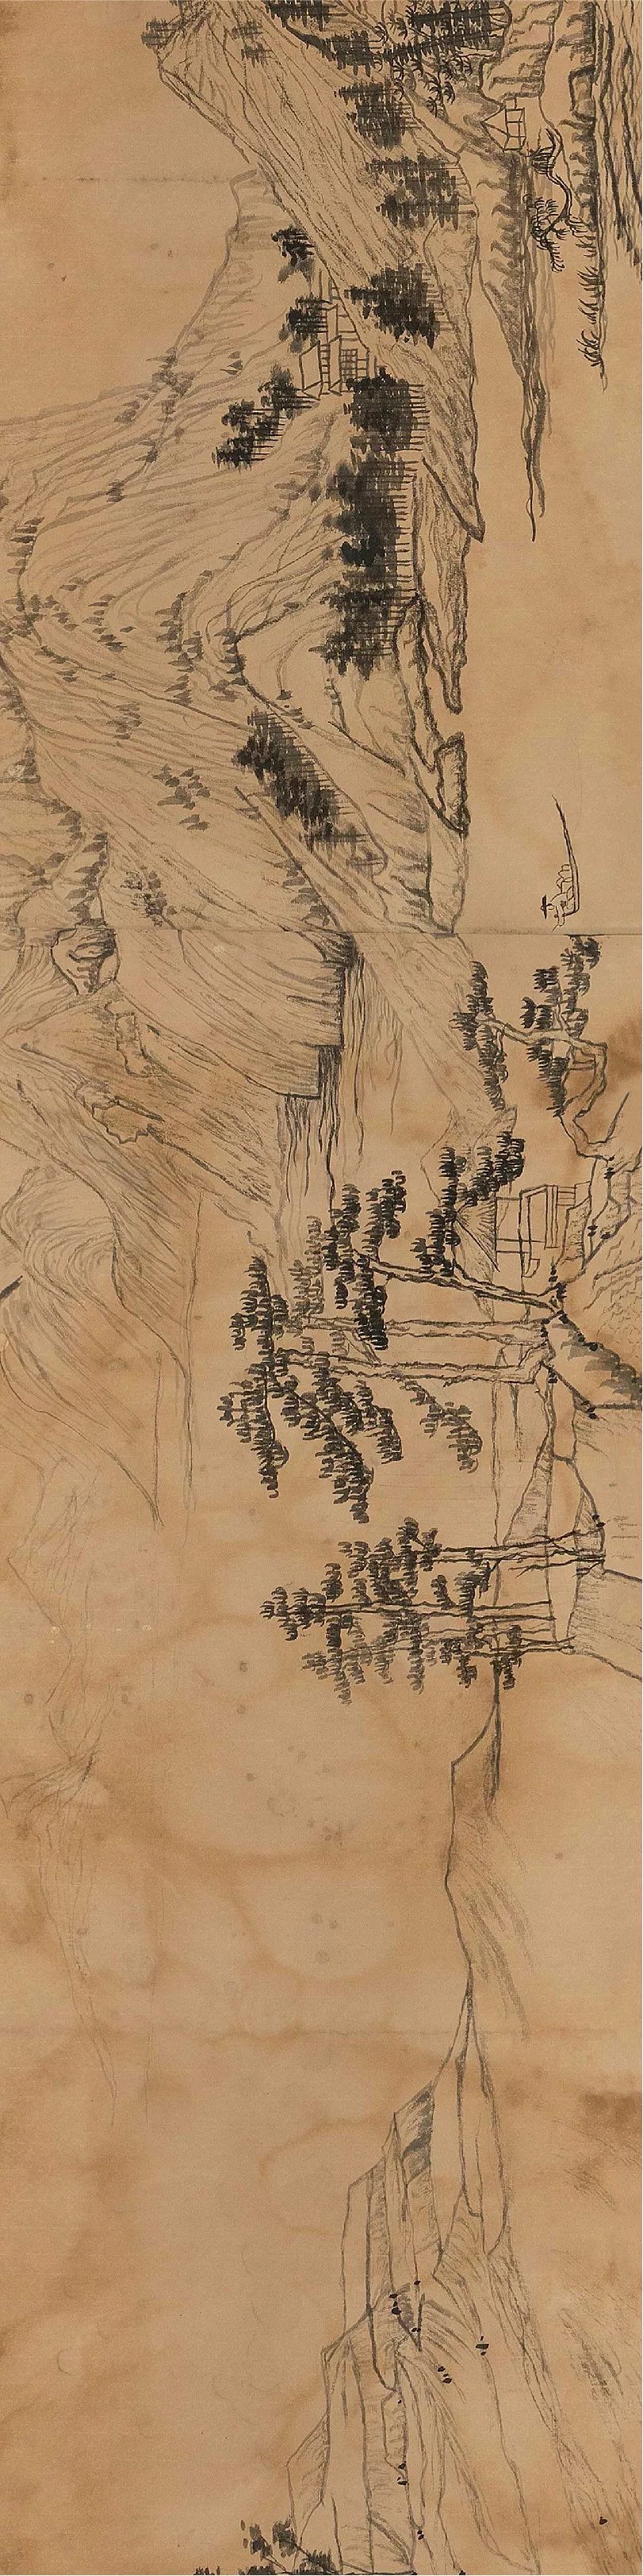 富春山居图前半部分图片